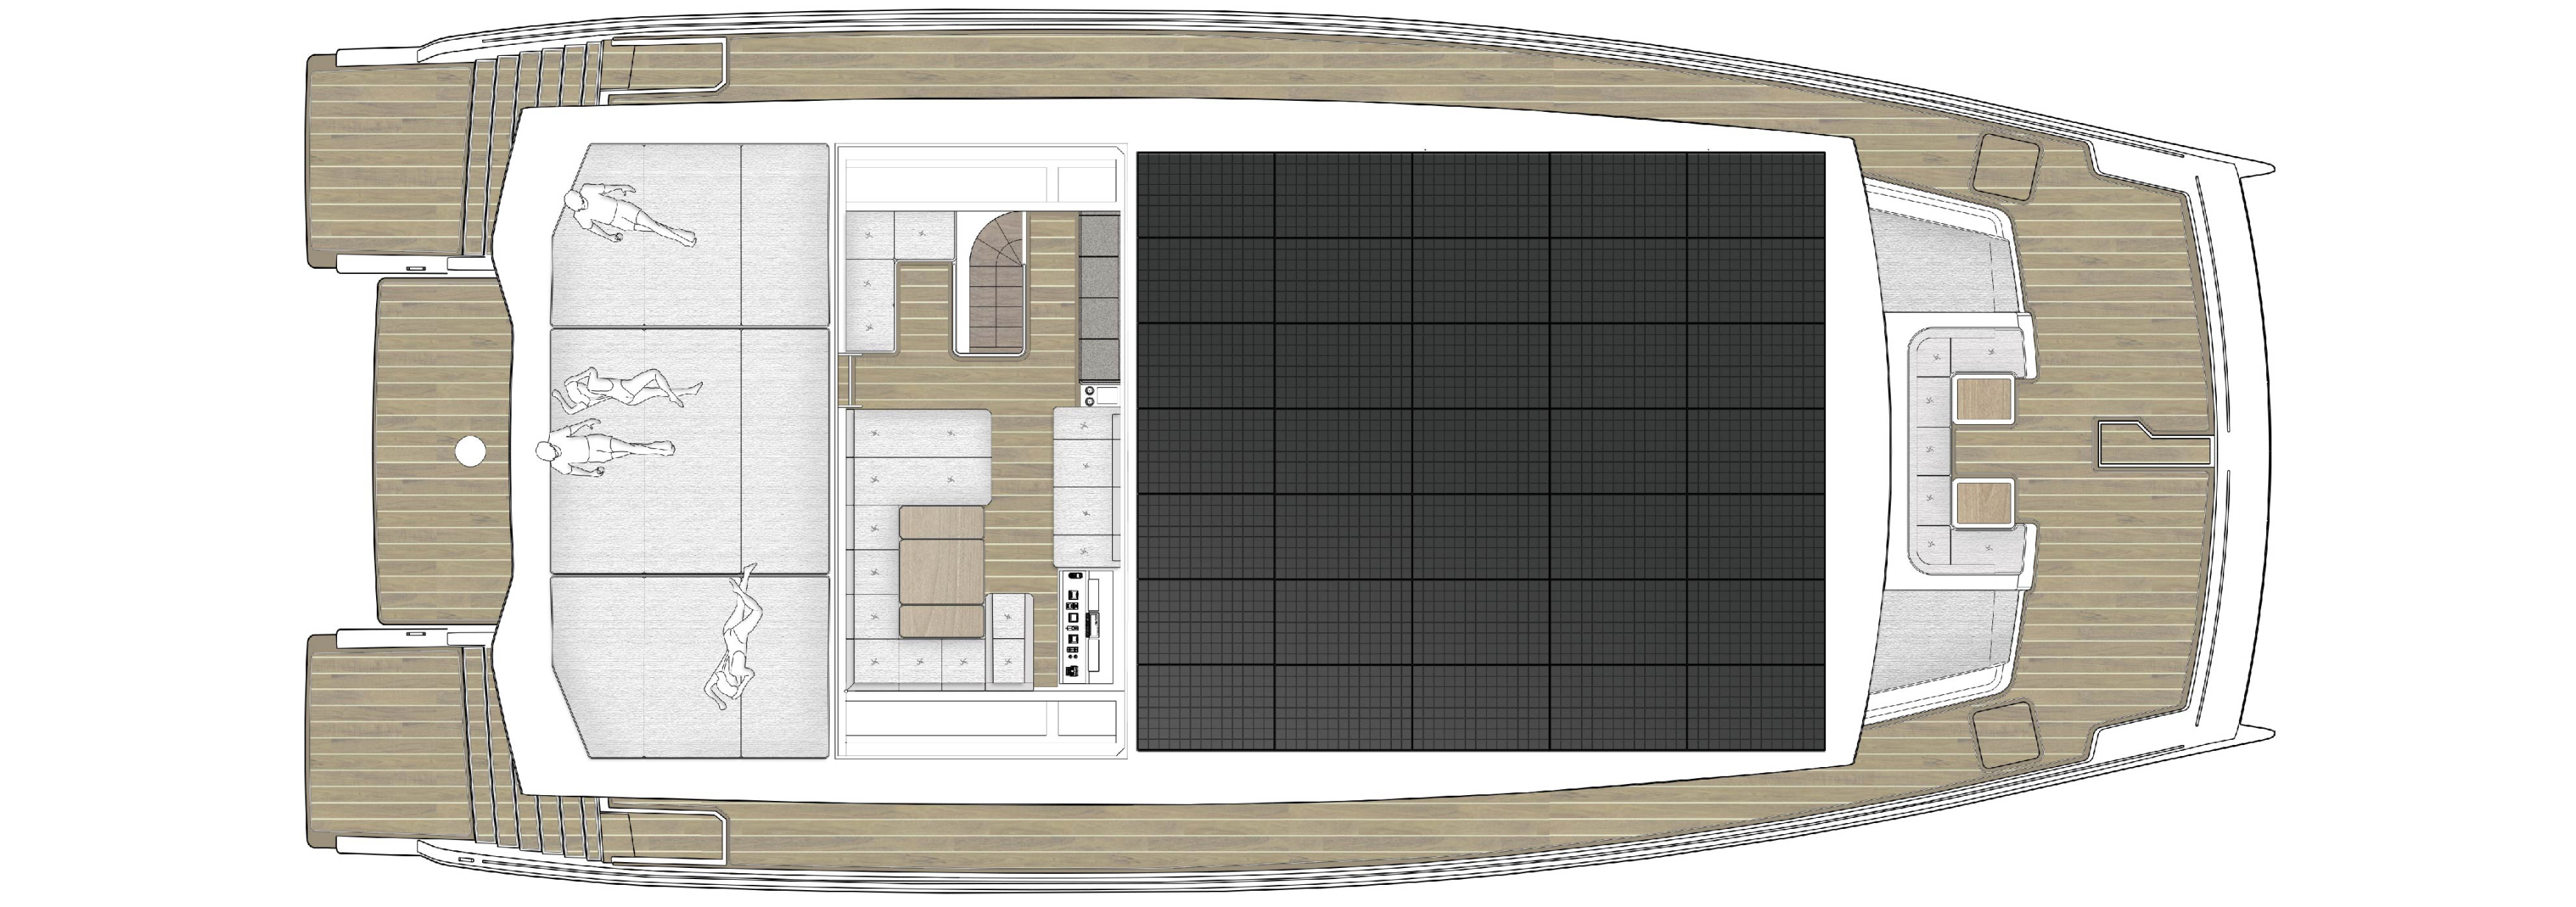 Upper deck flybridge plan